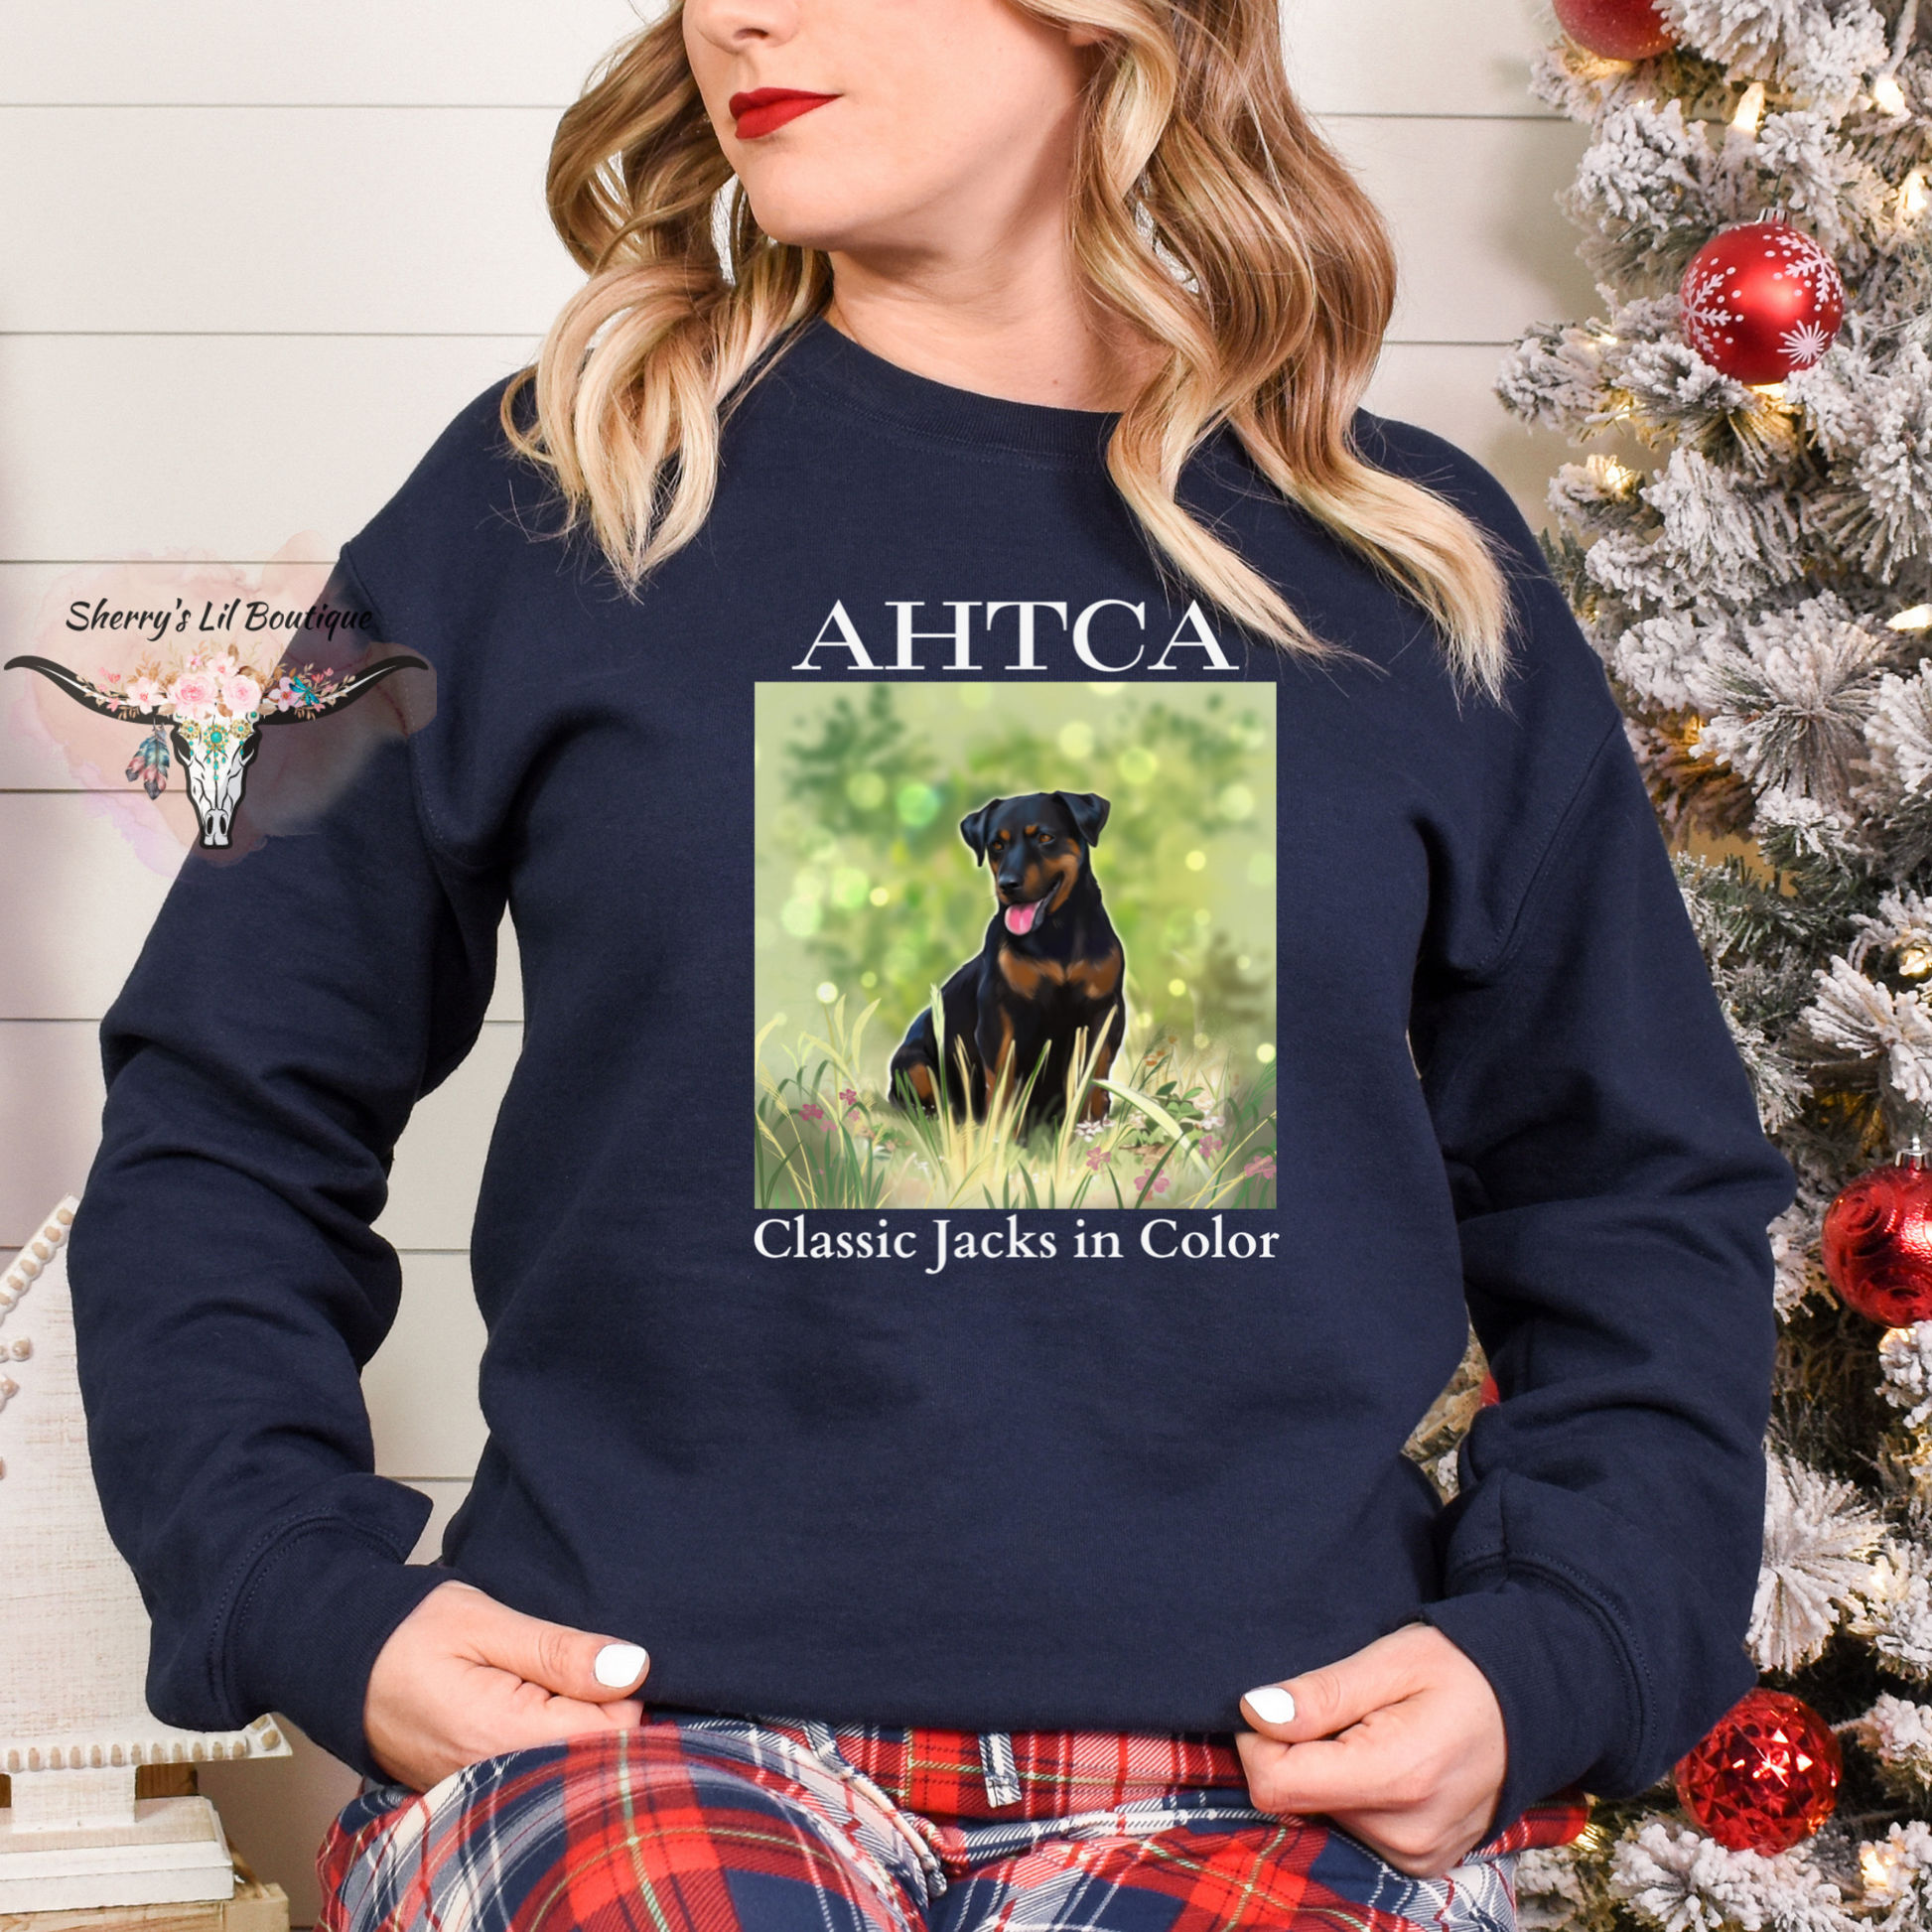 Navy sweatshirt with AHTCA graphic design